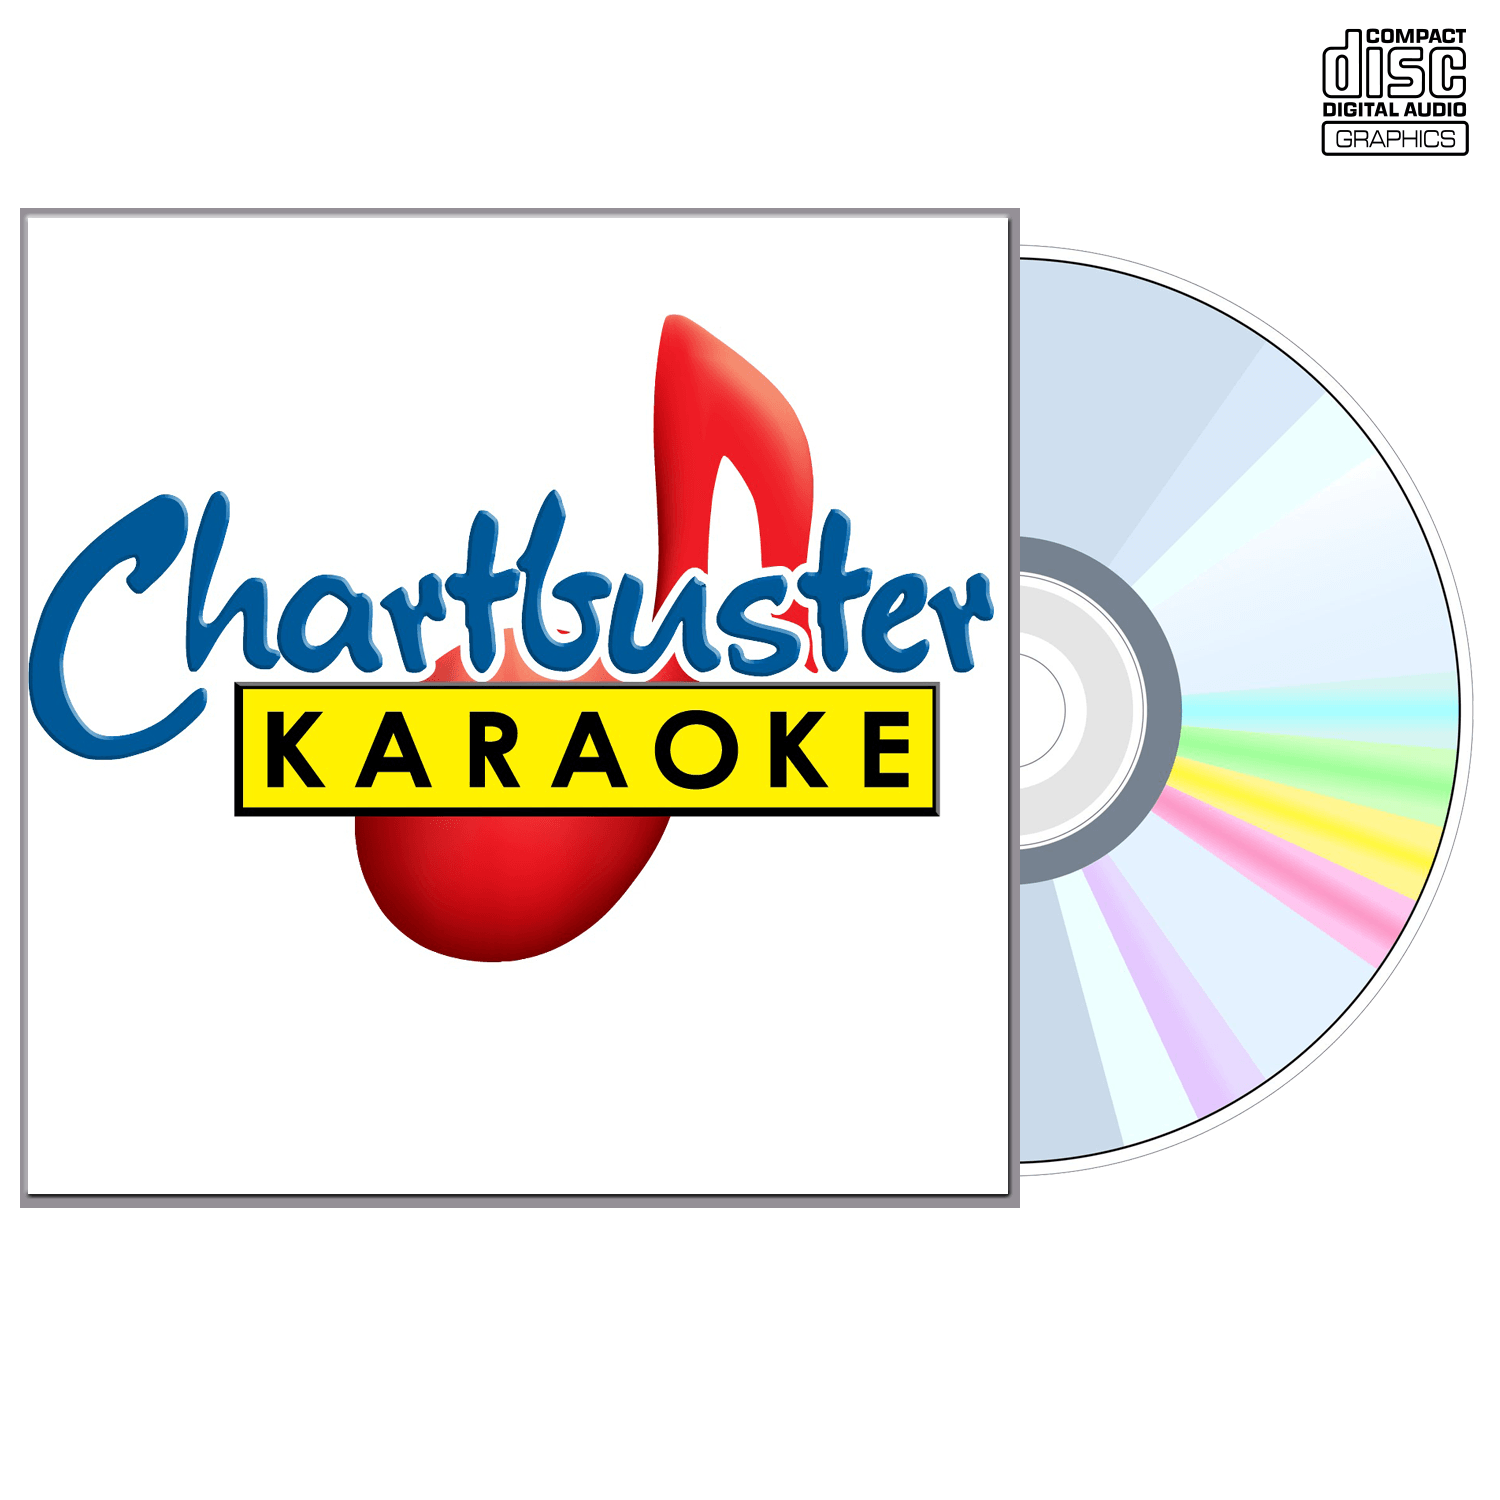 Kiss - CD+G - Chartbuster Karaoke - Karaoke Home Entertainment